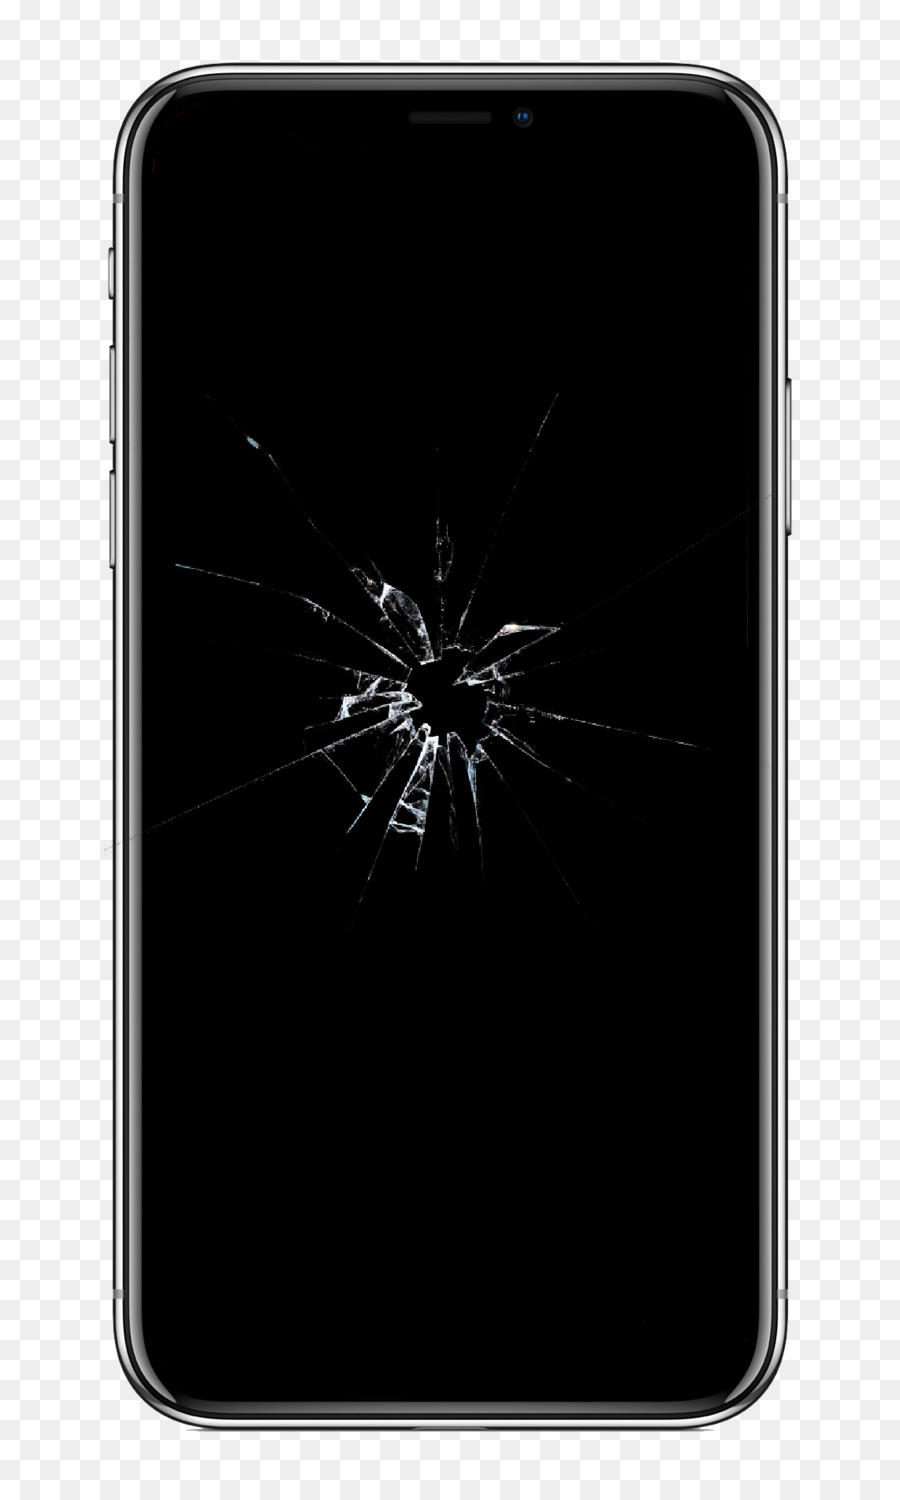 Cửa sổ Bạo lực cực đoan sư phạm - iphone x bị hỏng